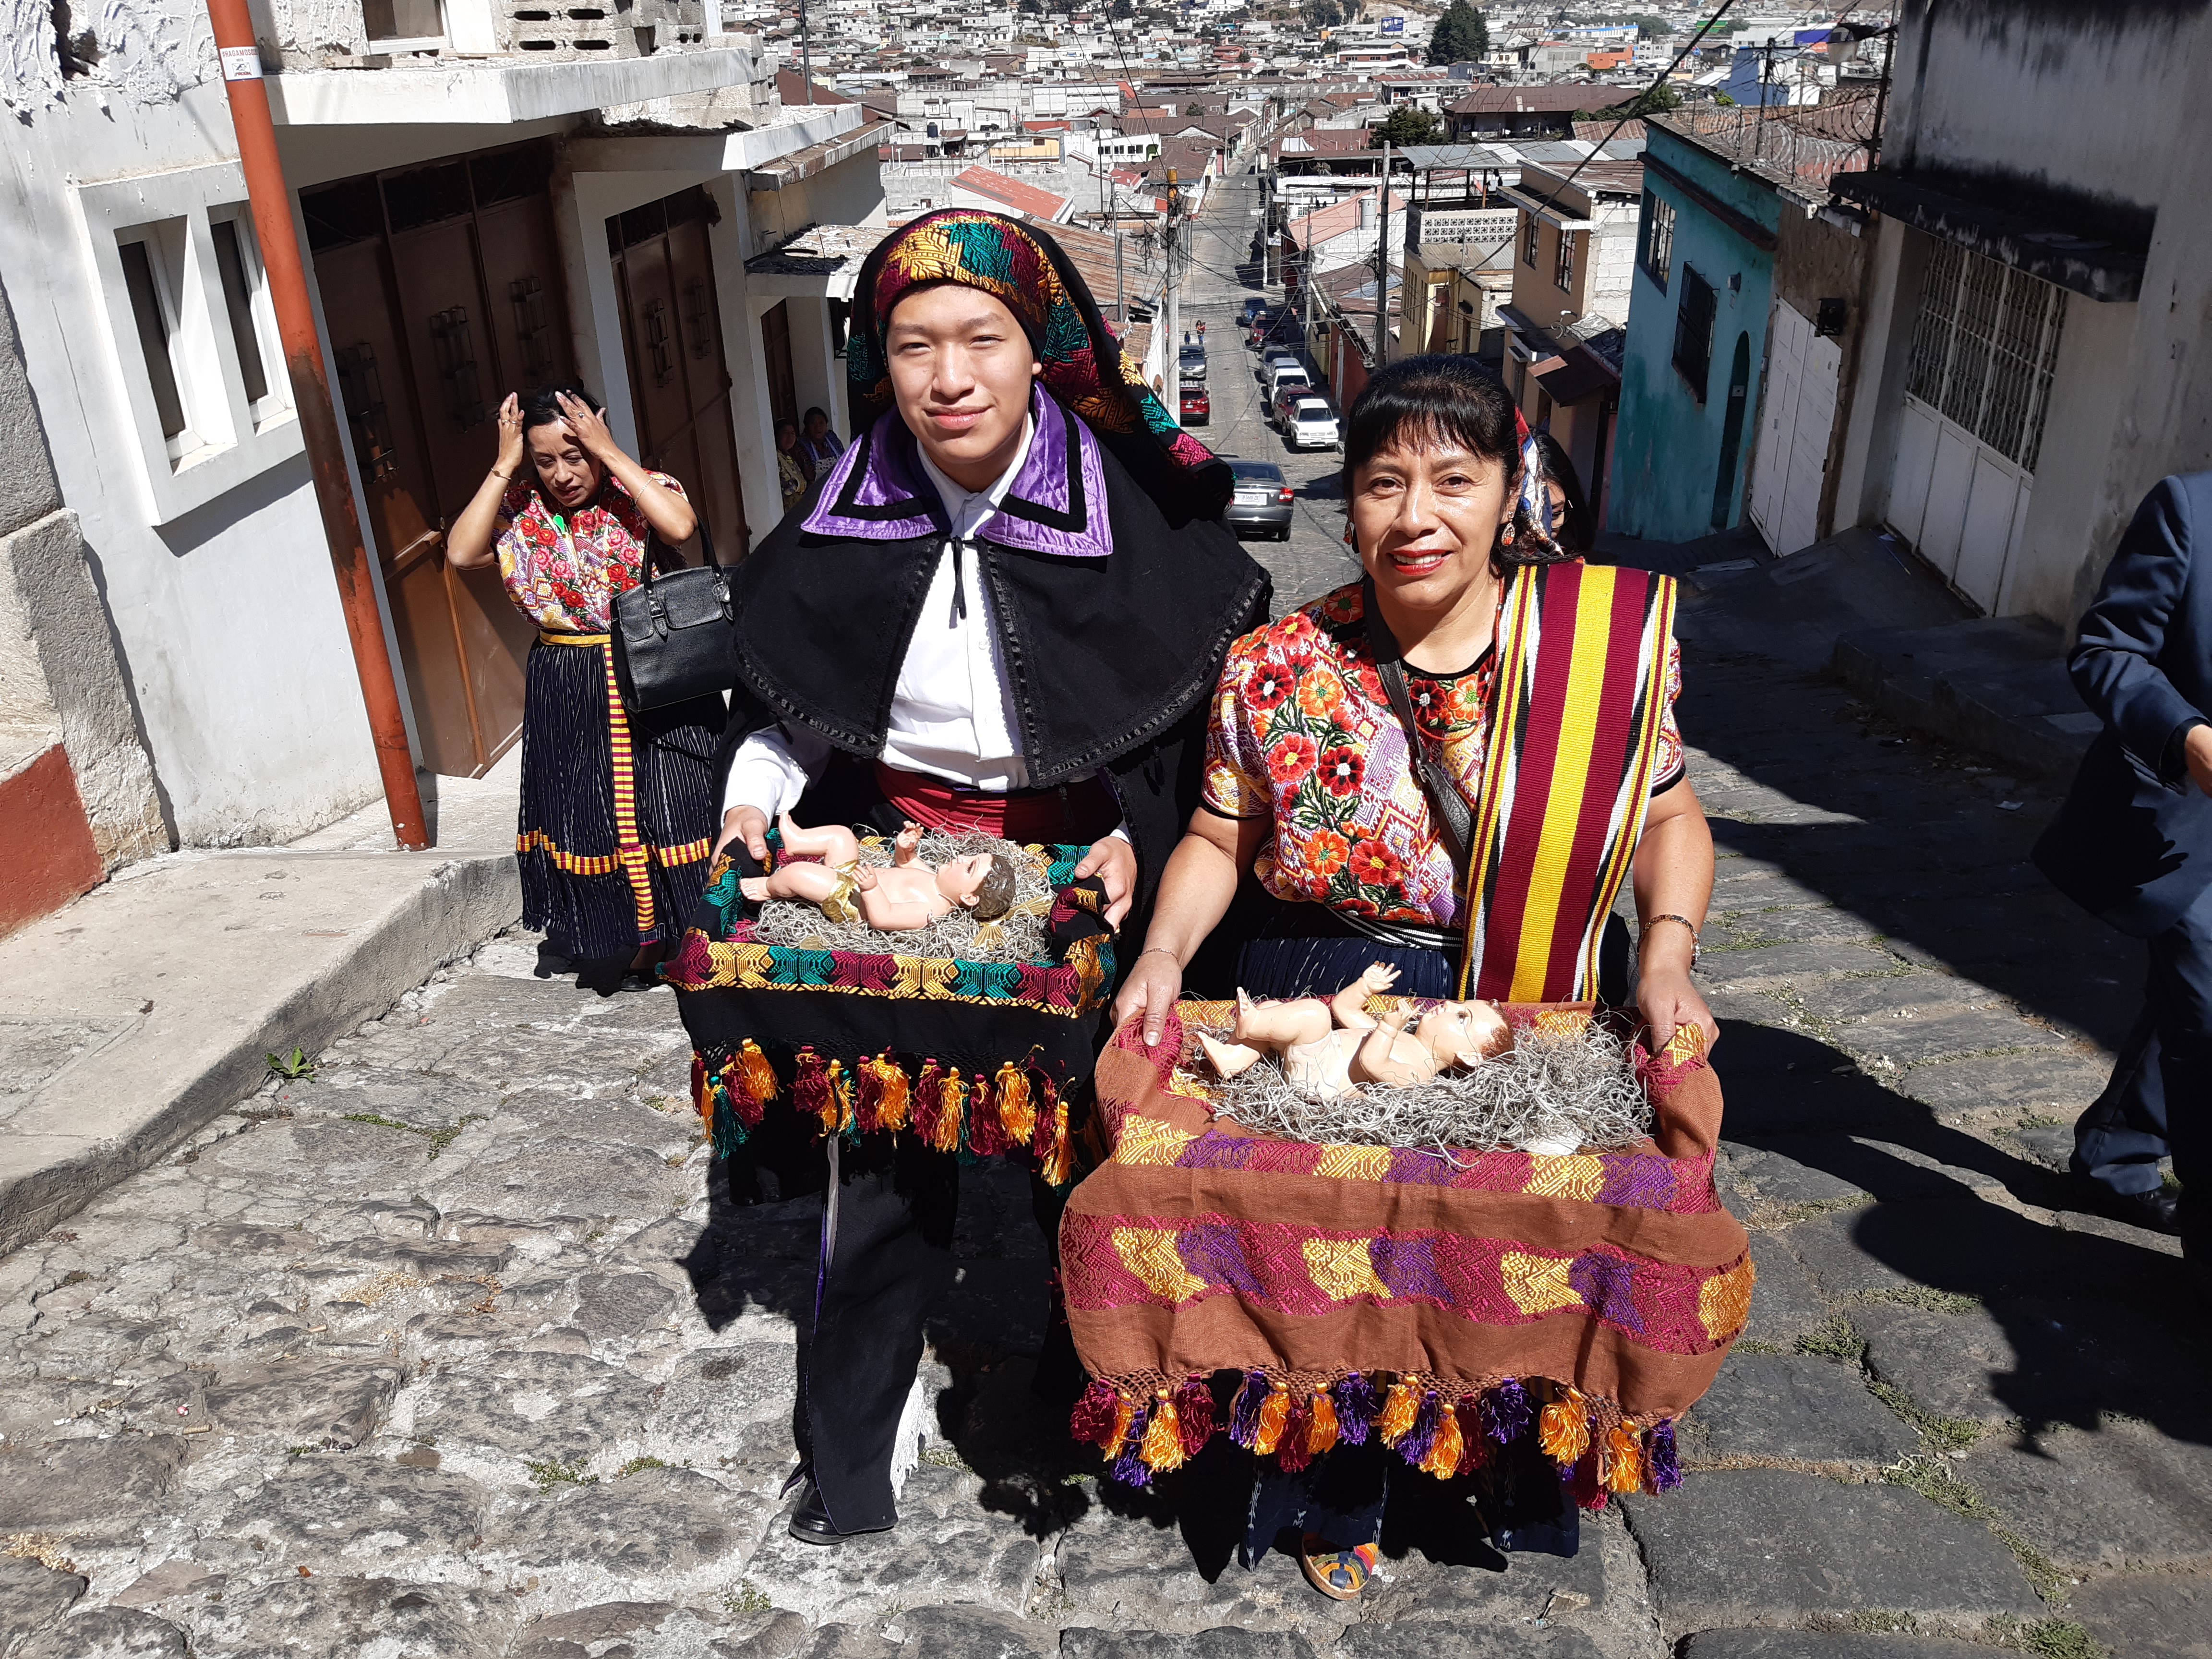 Algunos de las hermandades acudieron con la vestimenta ceremonial de Quetzaltenango. (Foto Prensa Libre: Raúl Juárez